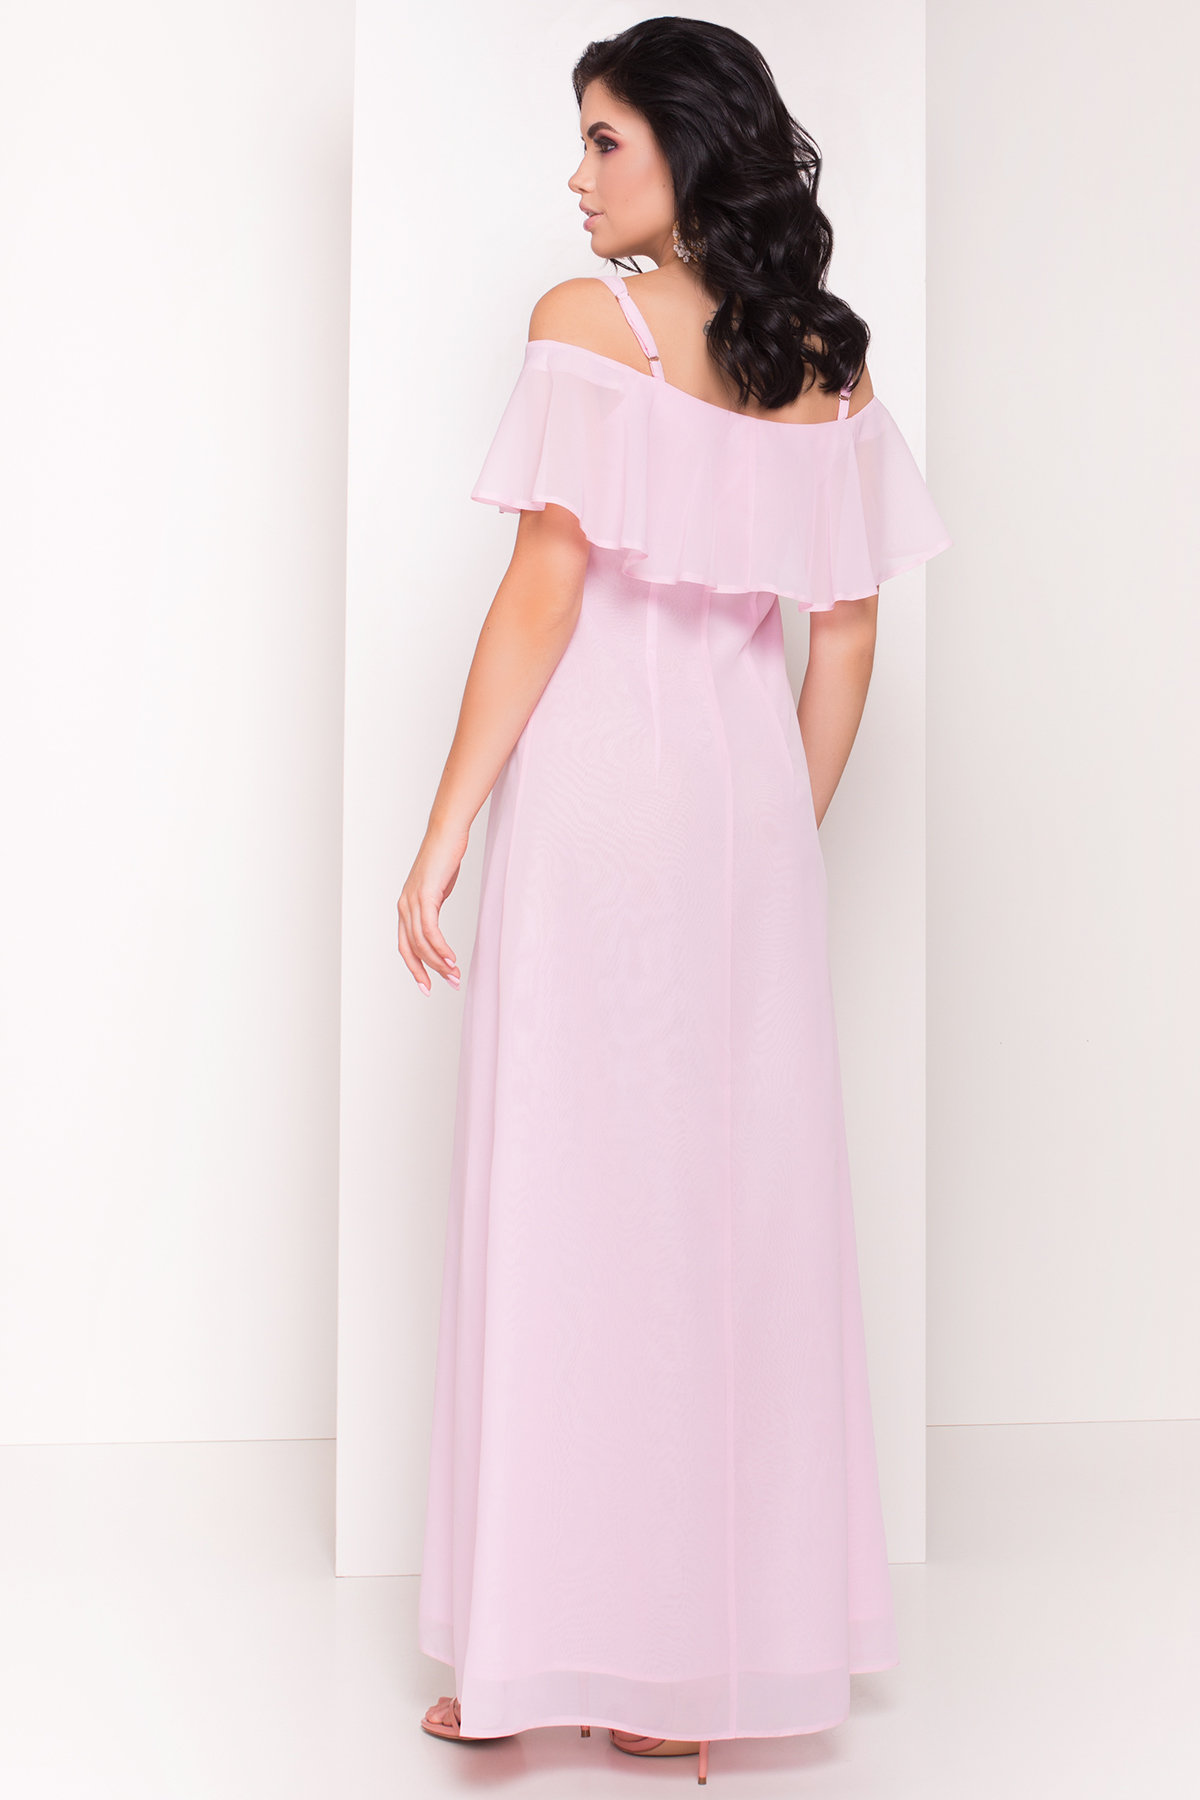 Платье Пикабу 5149 АРТ. 36234 Цвет: Розовый Светлый - фото 4, интернет магазин tm-modus.ru